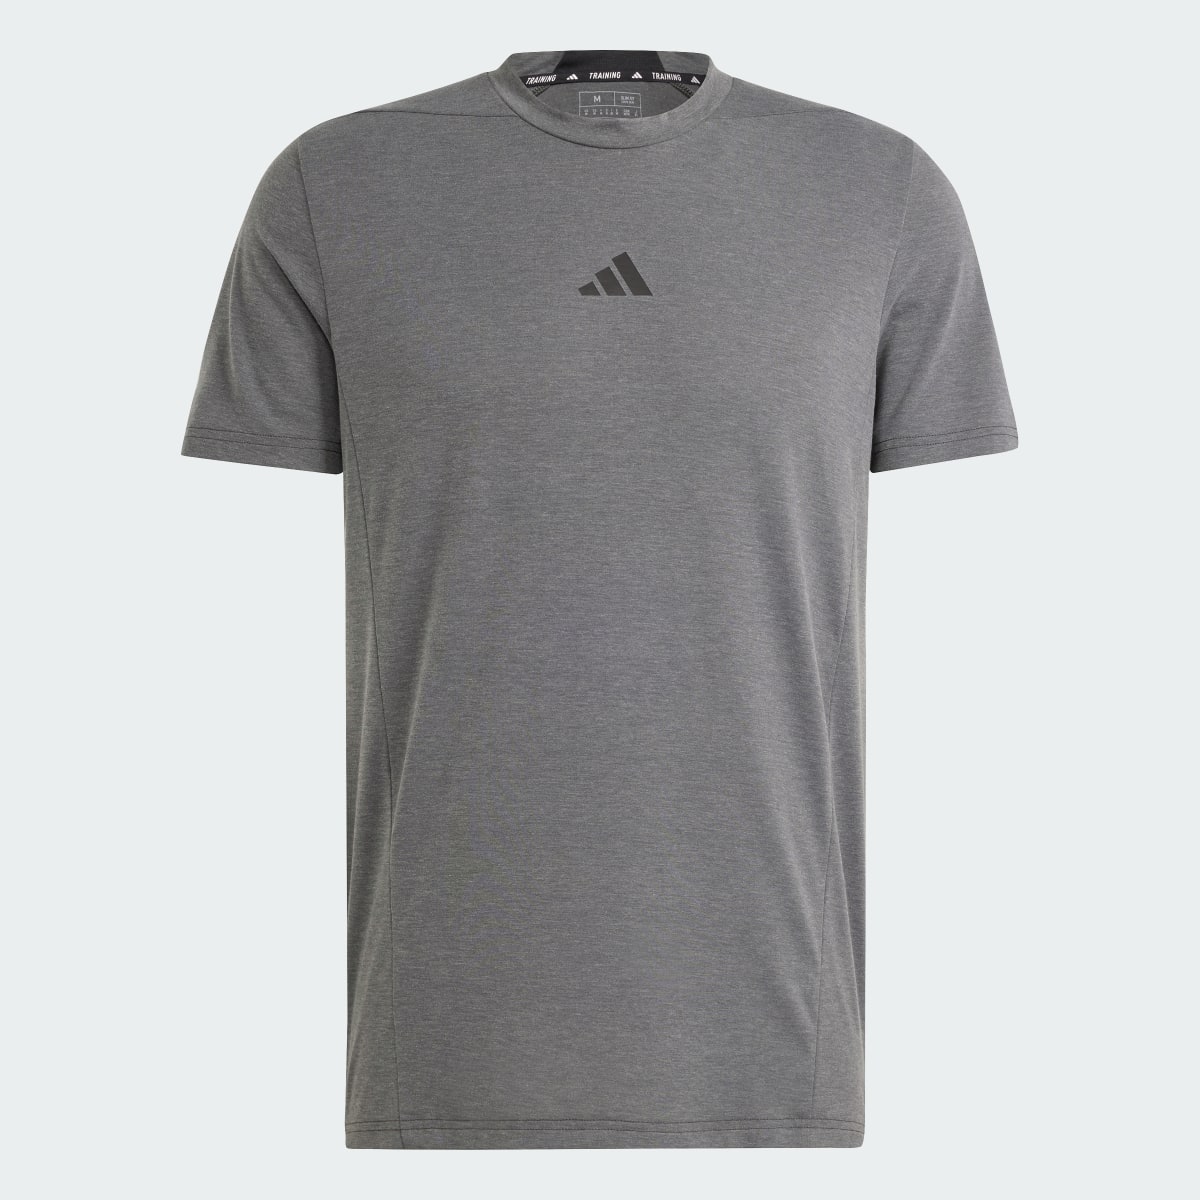 Adidas T-shirt d'entraînement Designed for Training. 6